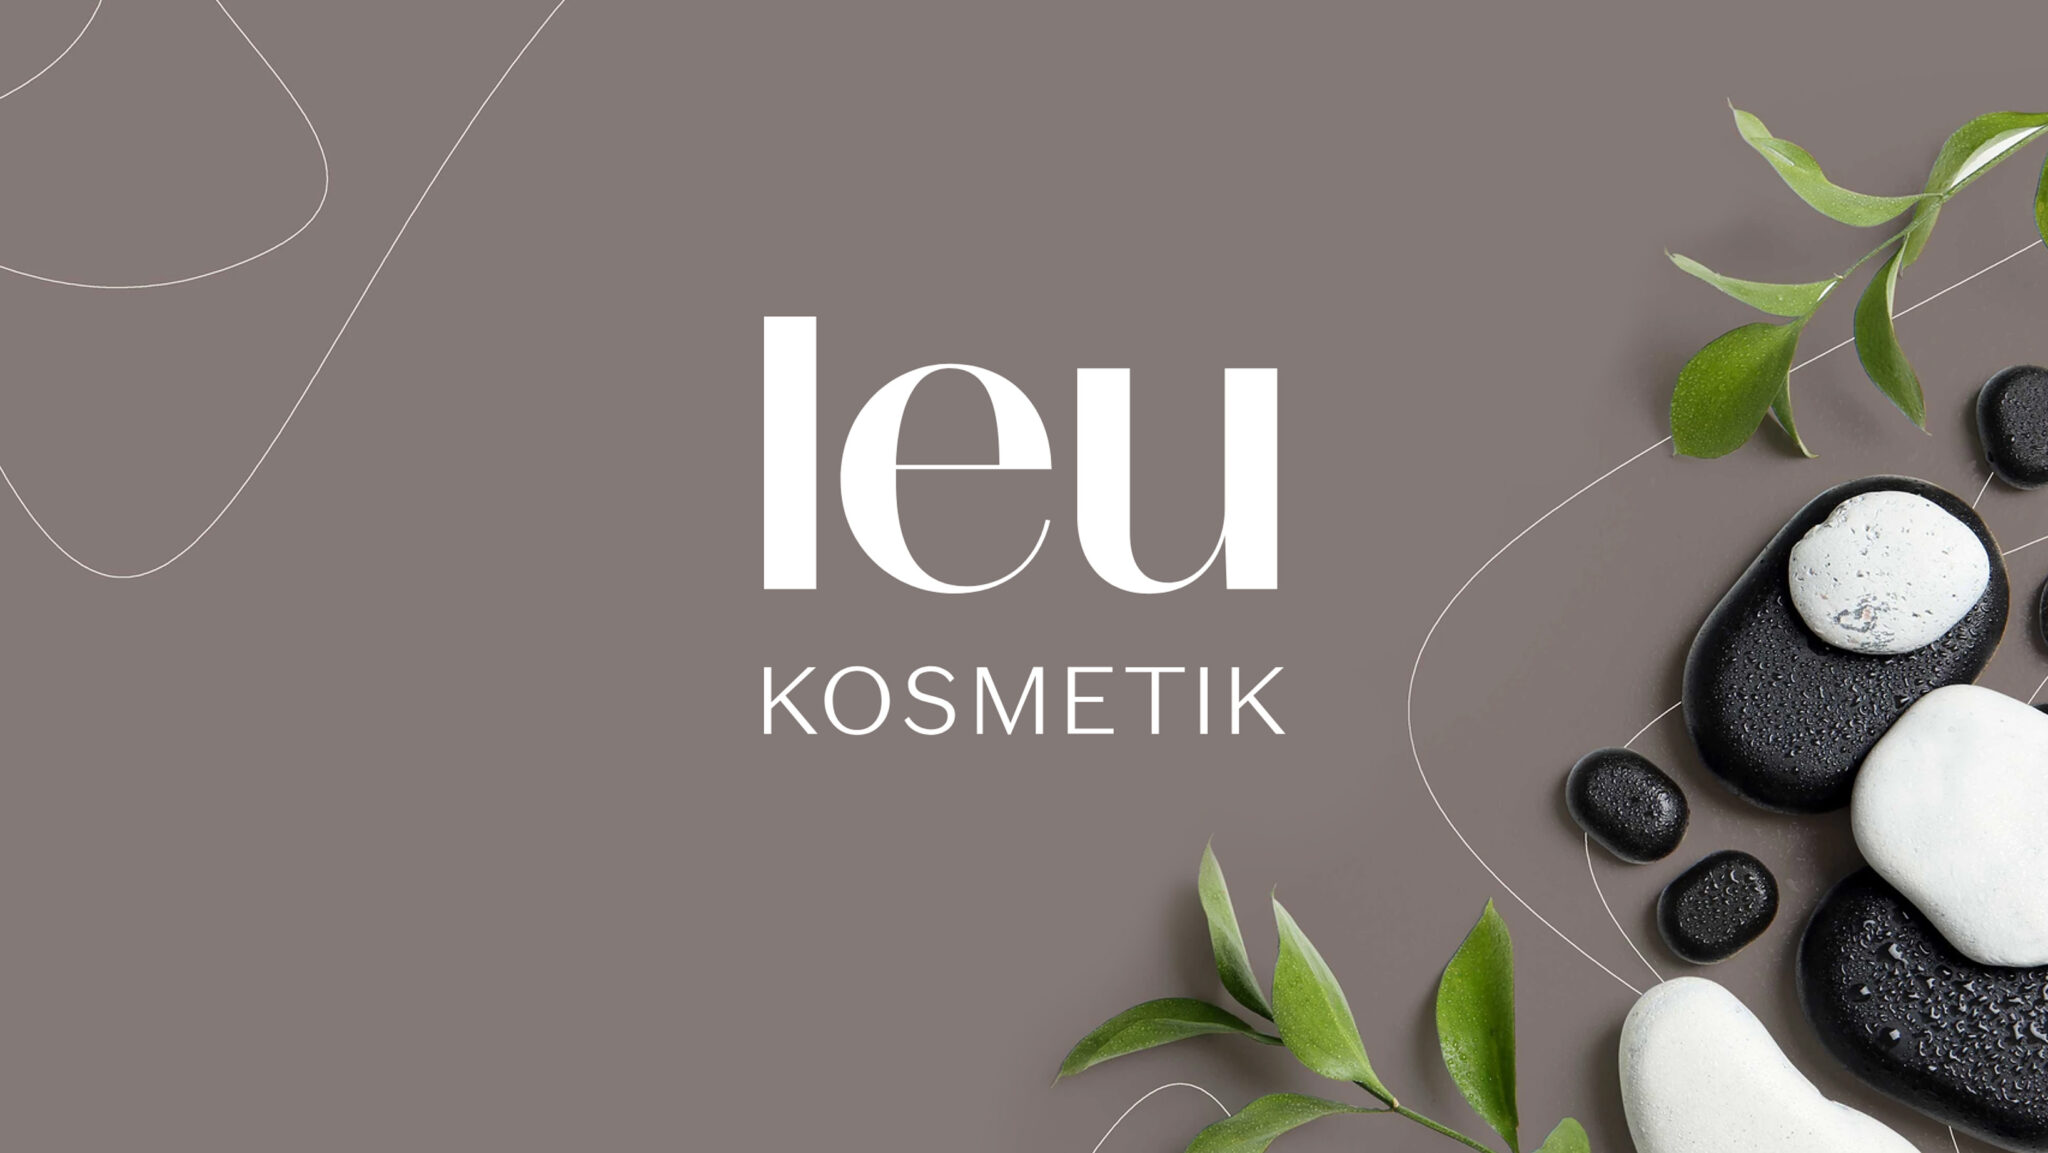 Logo-Gestaltung für die Firma Leu-Kosmetik. Grafische Elemente mit Fotografien an den Seiten.